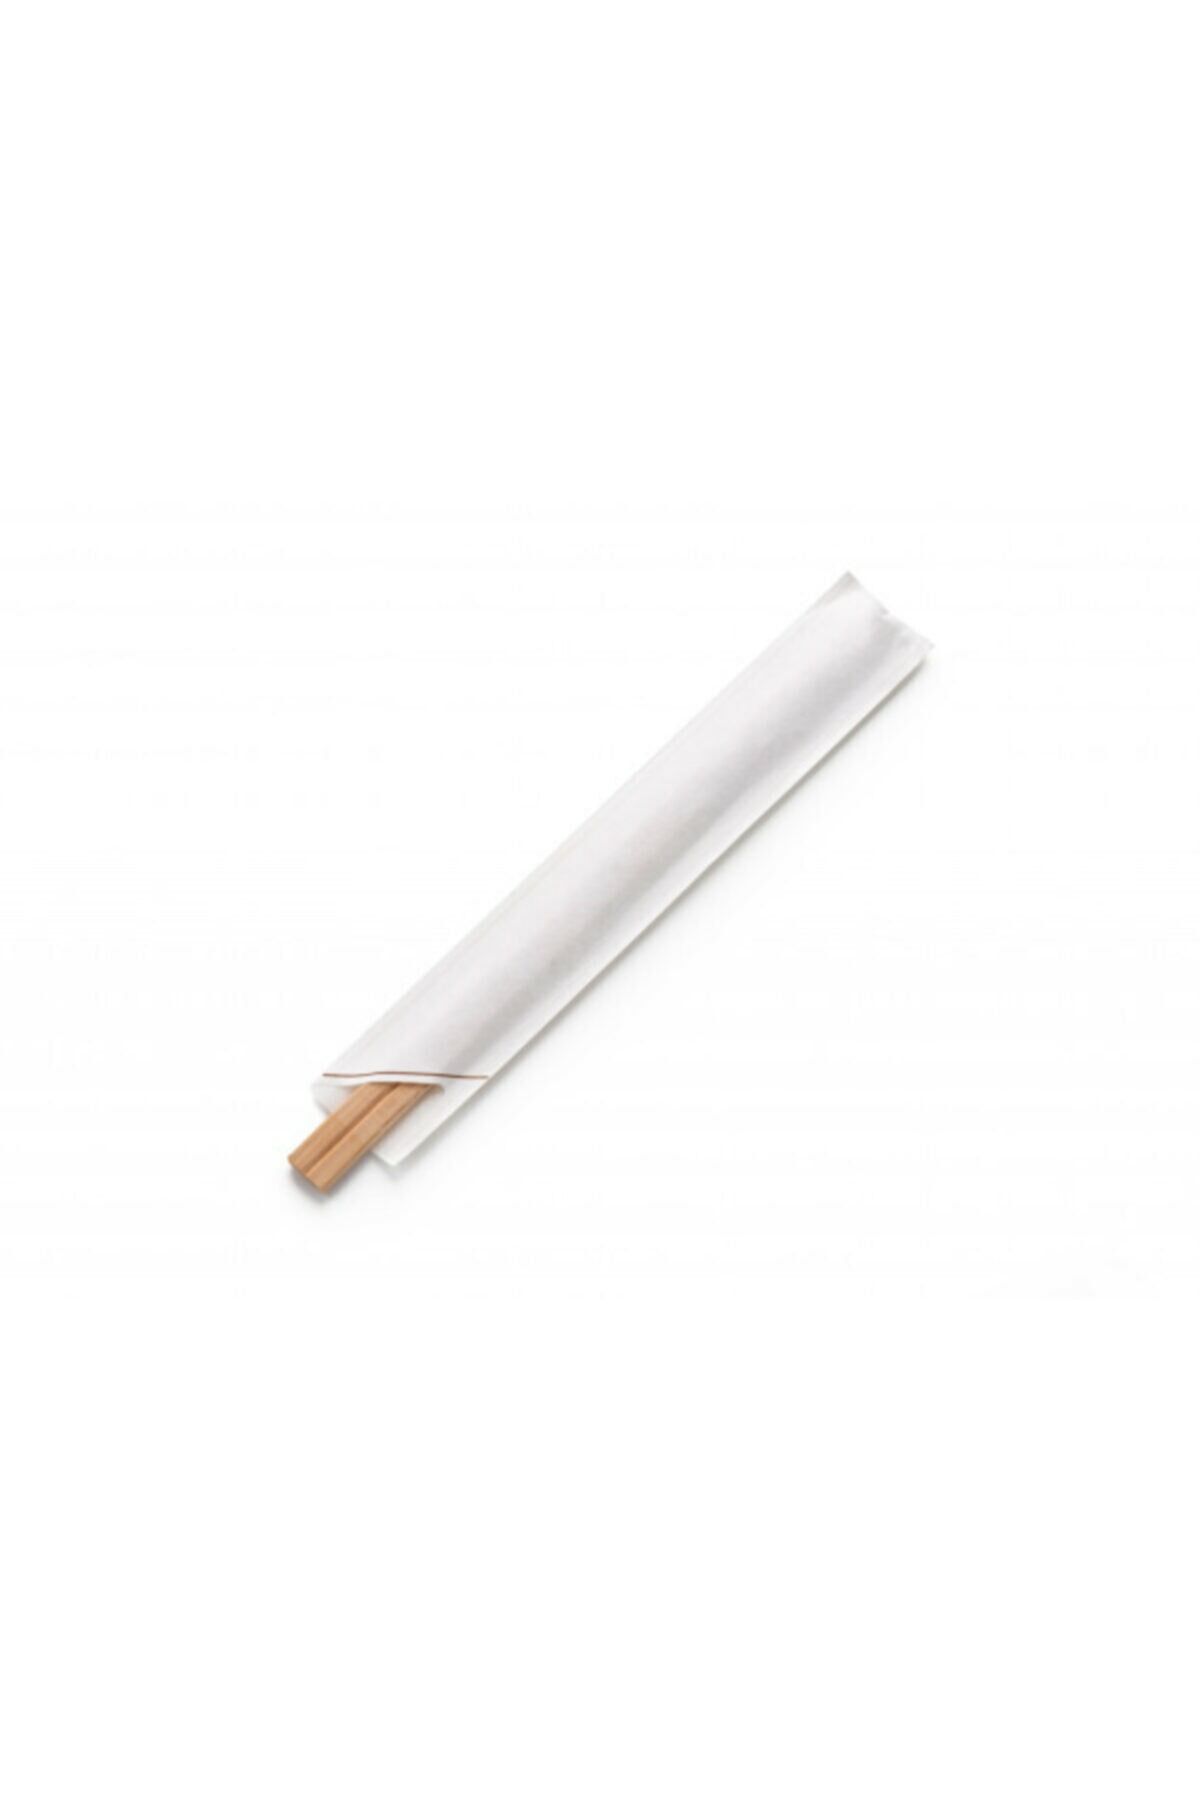 Bambu Chopstick - 21 Cm - Beyaz Kılıflı - 10 Çift